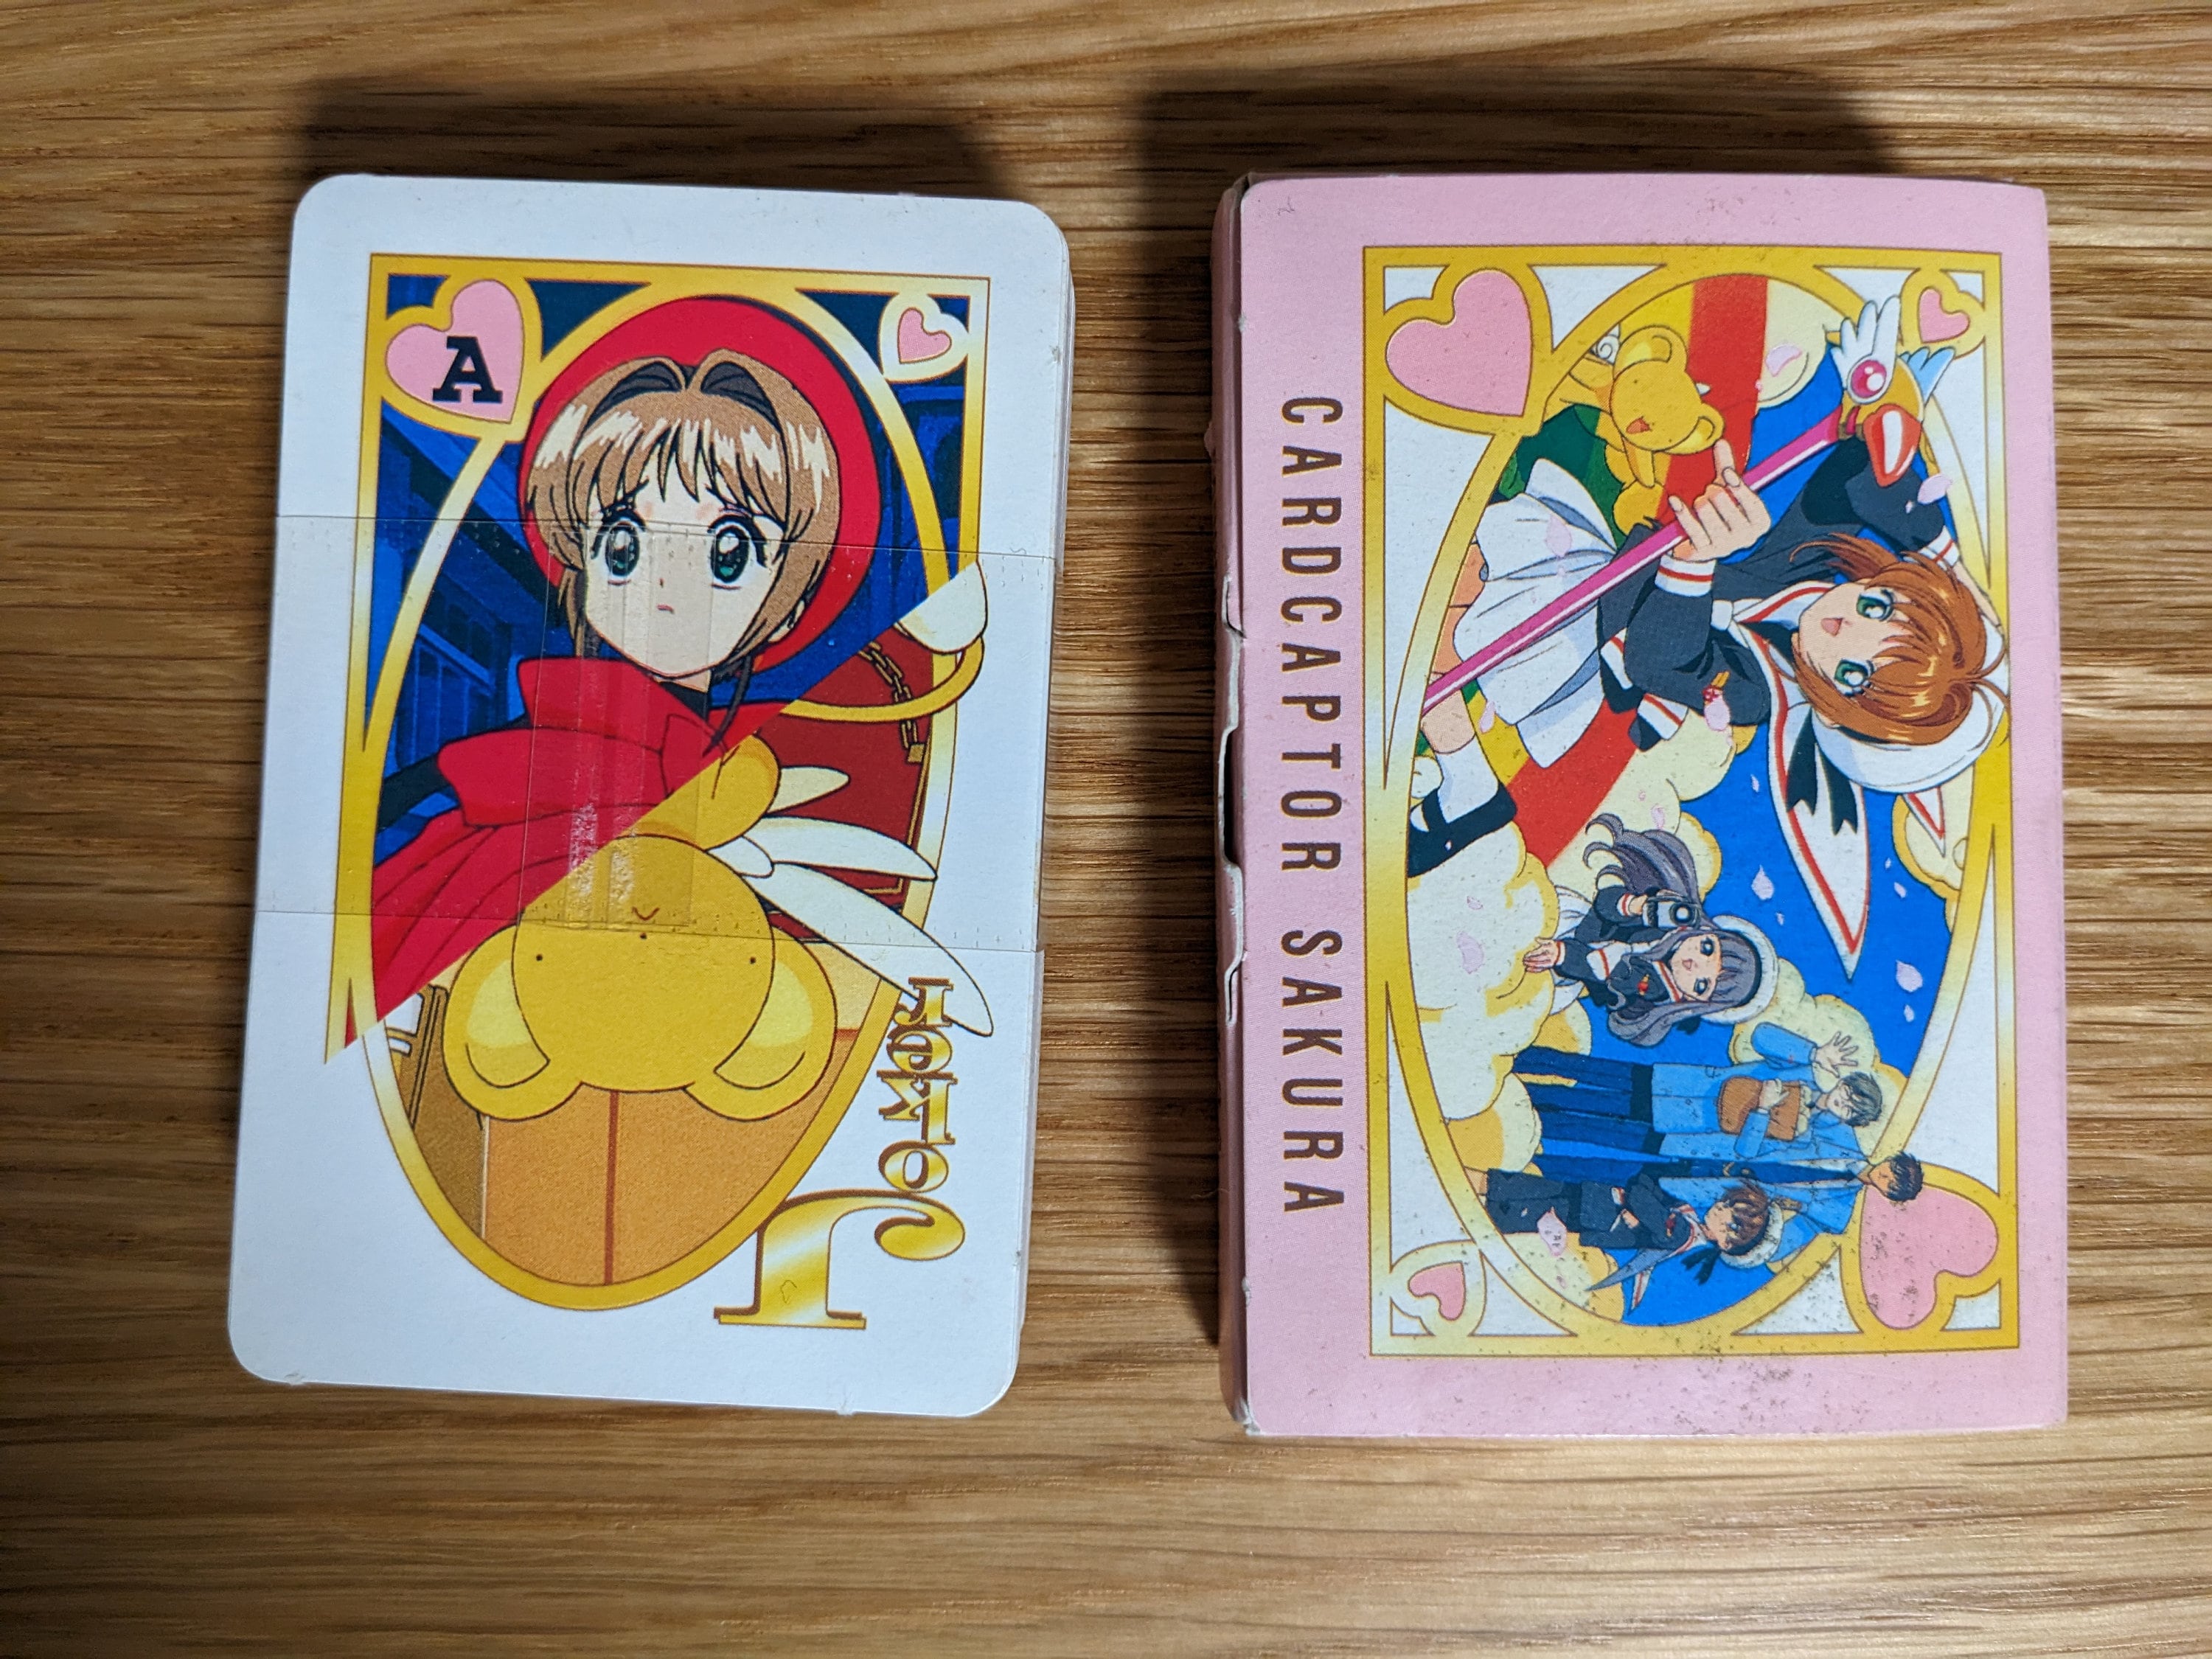 Cardcaptor Sakura Sanrio Characters Japanese Playing Card Game Japan Joker